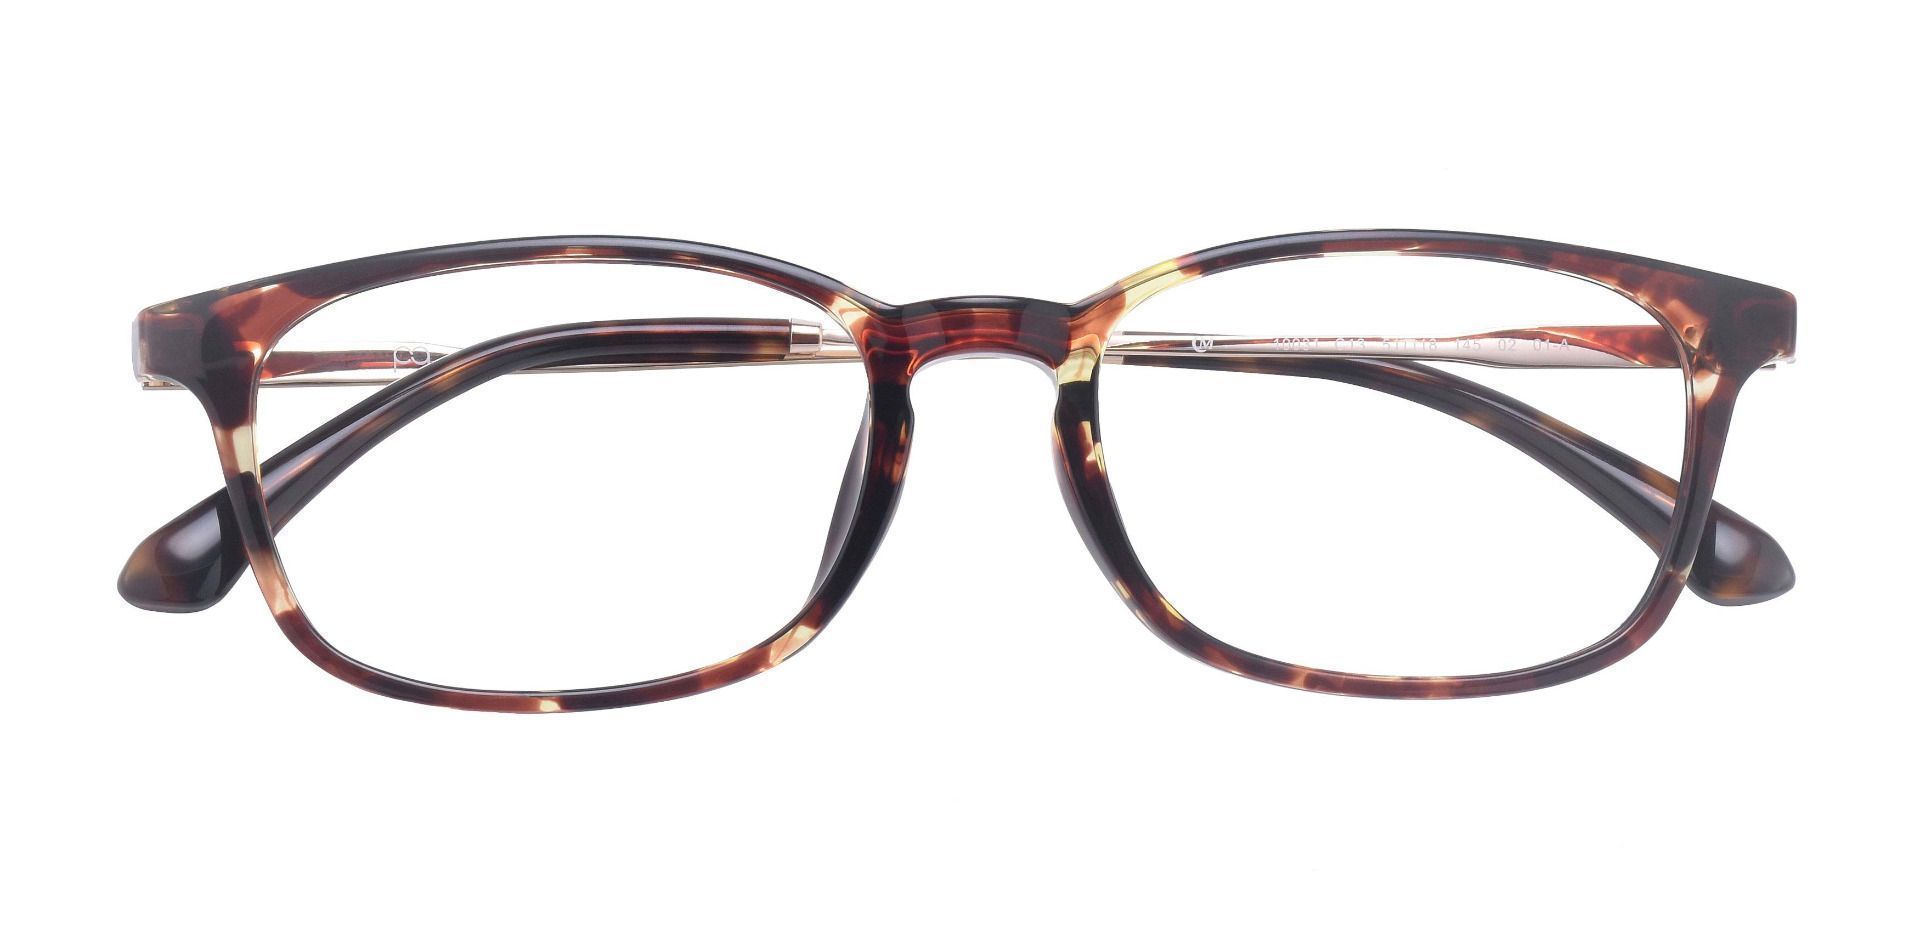 Vanna Rectangle Non-Rx Glasses - Tortoise